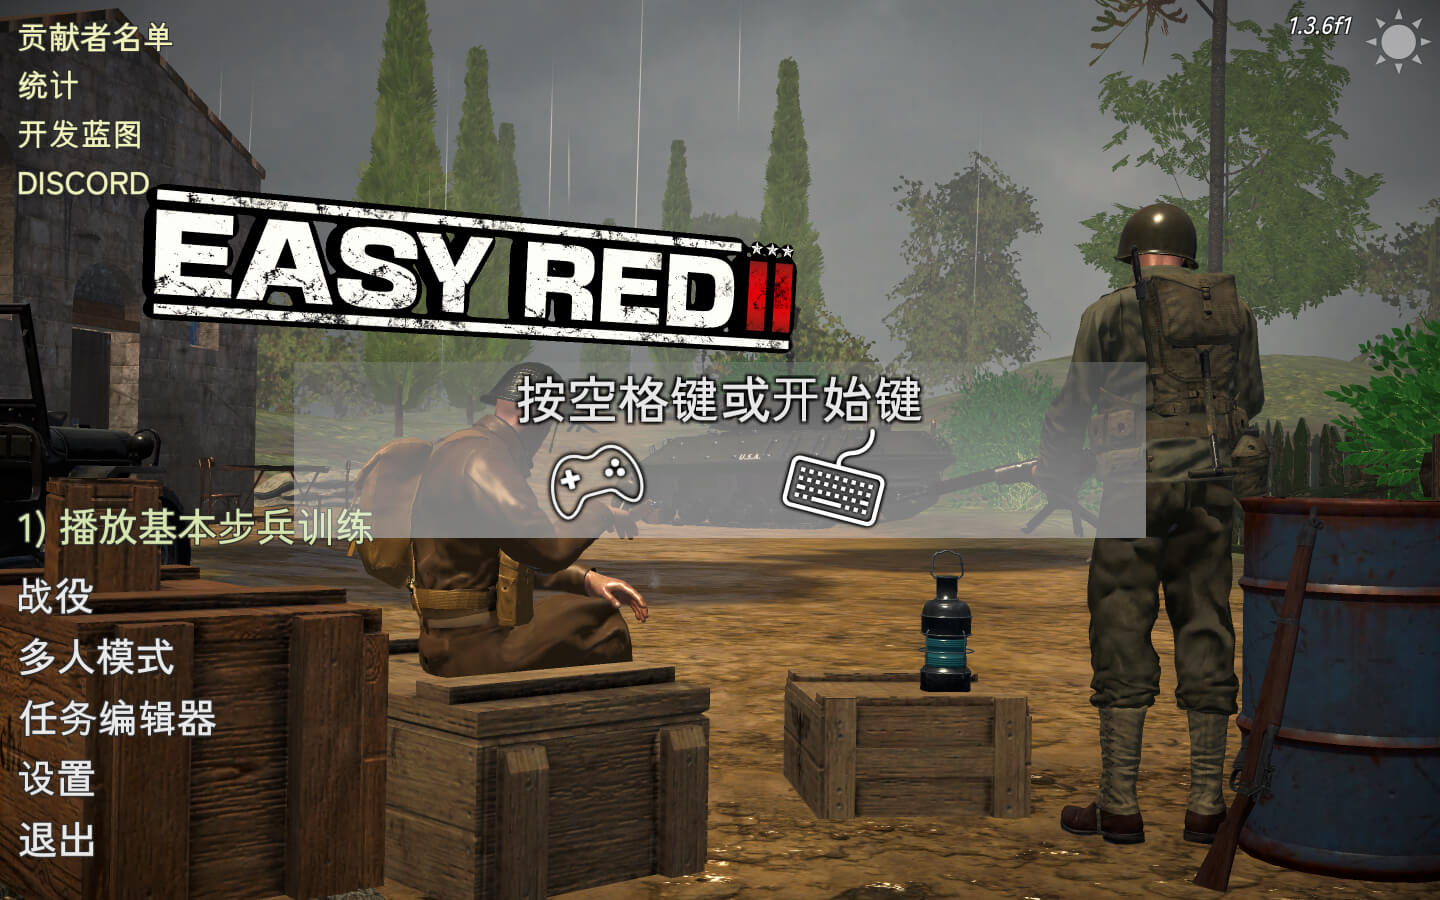 浅红2 Easy Red 2 for Mac v1.3.6f1 中文原生版 含DLC-1